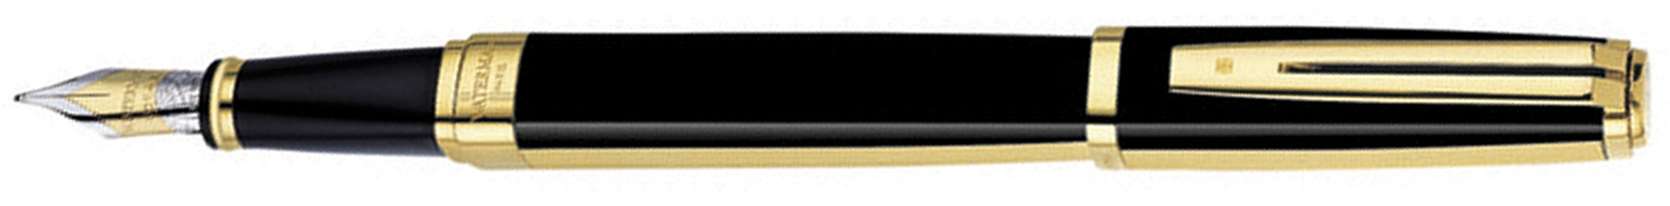 Перьевая ручка Waterman Exception Night&Day Gold GT. Перо - золото18К, детали дизайна: позолота 